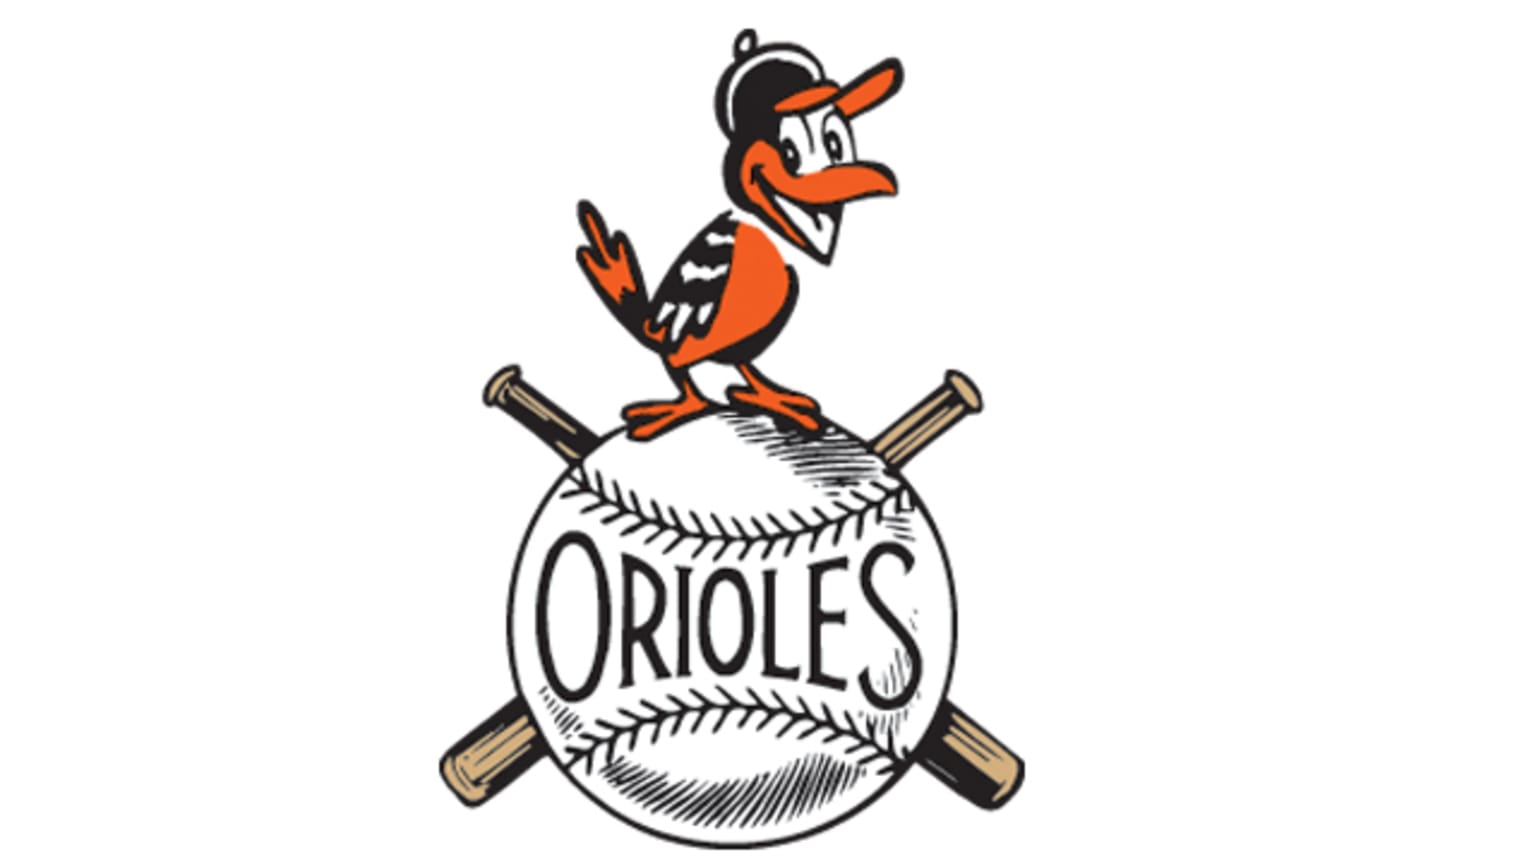 Baltimore Orioles Cartoon Bird Cap Logos